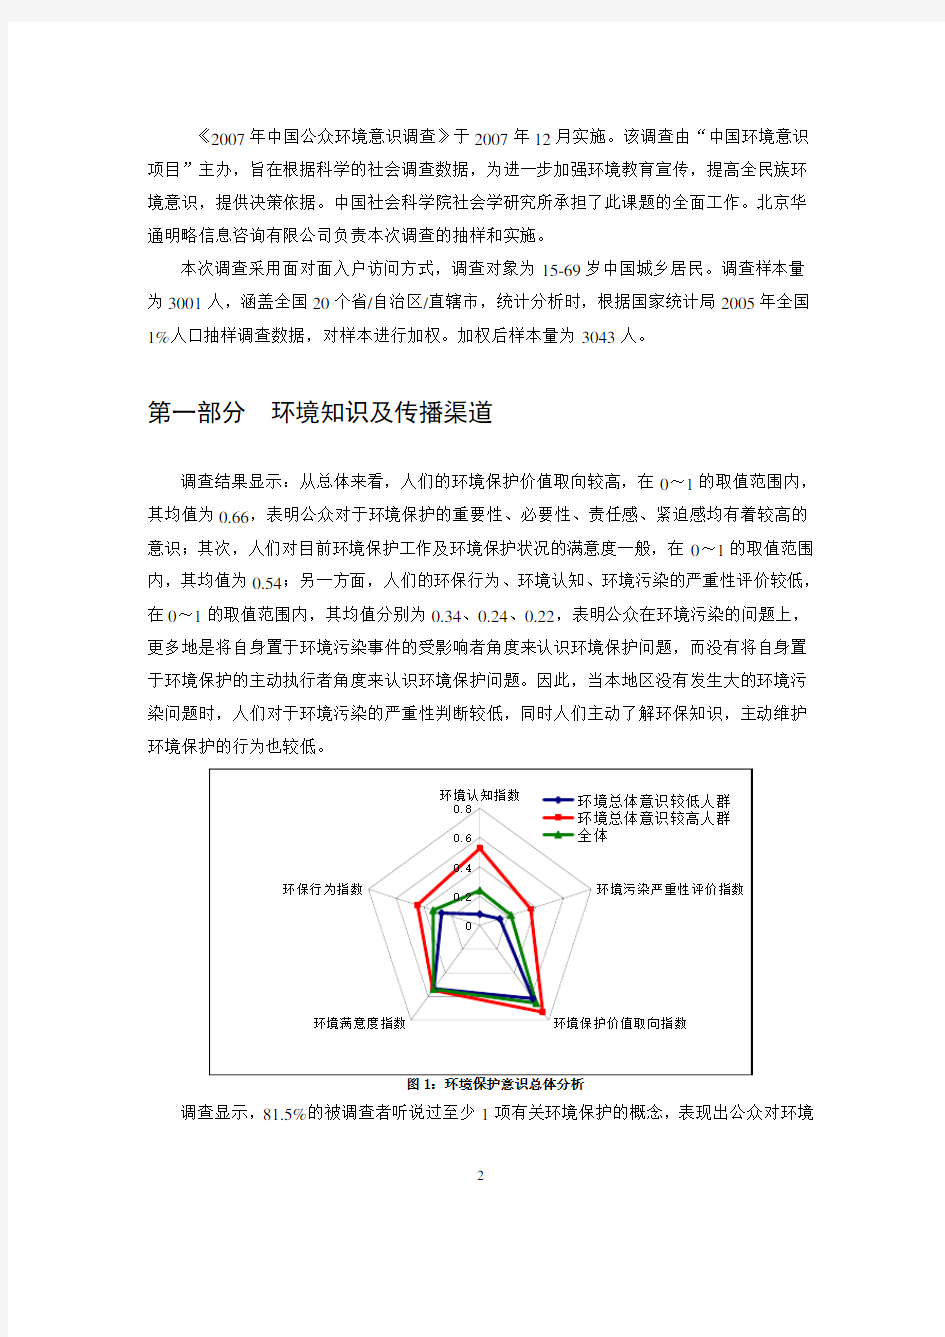 中国环境意识项目2007年全国公众环境意识调查报告(中文简本)